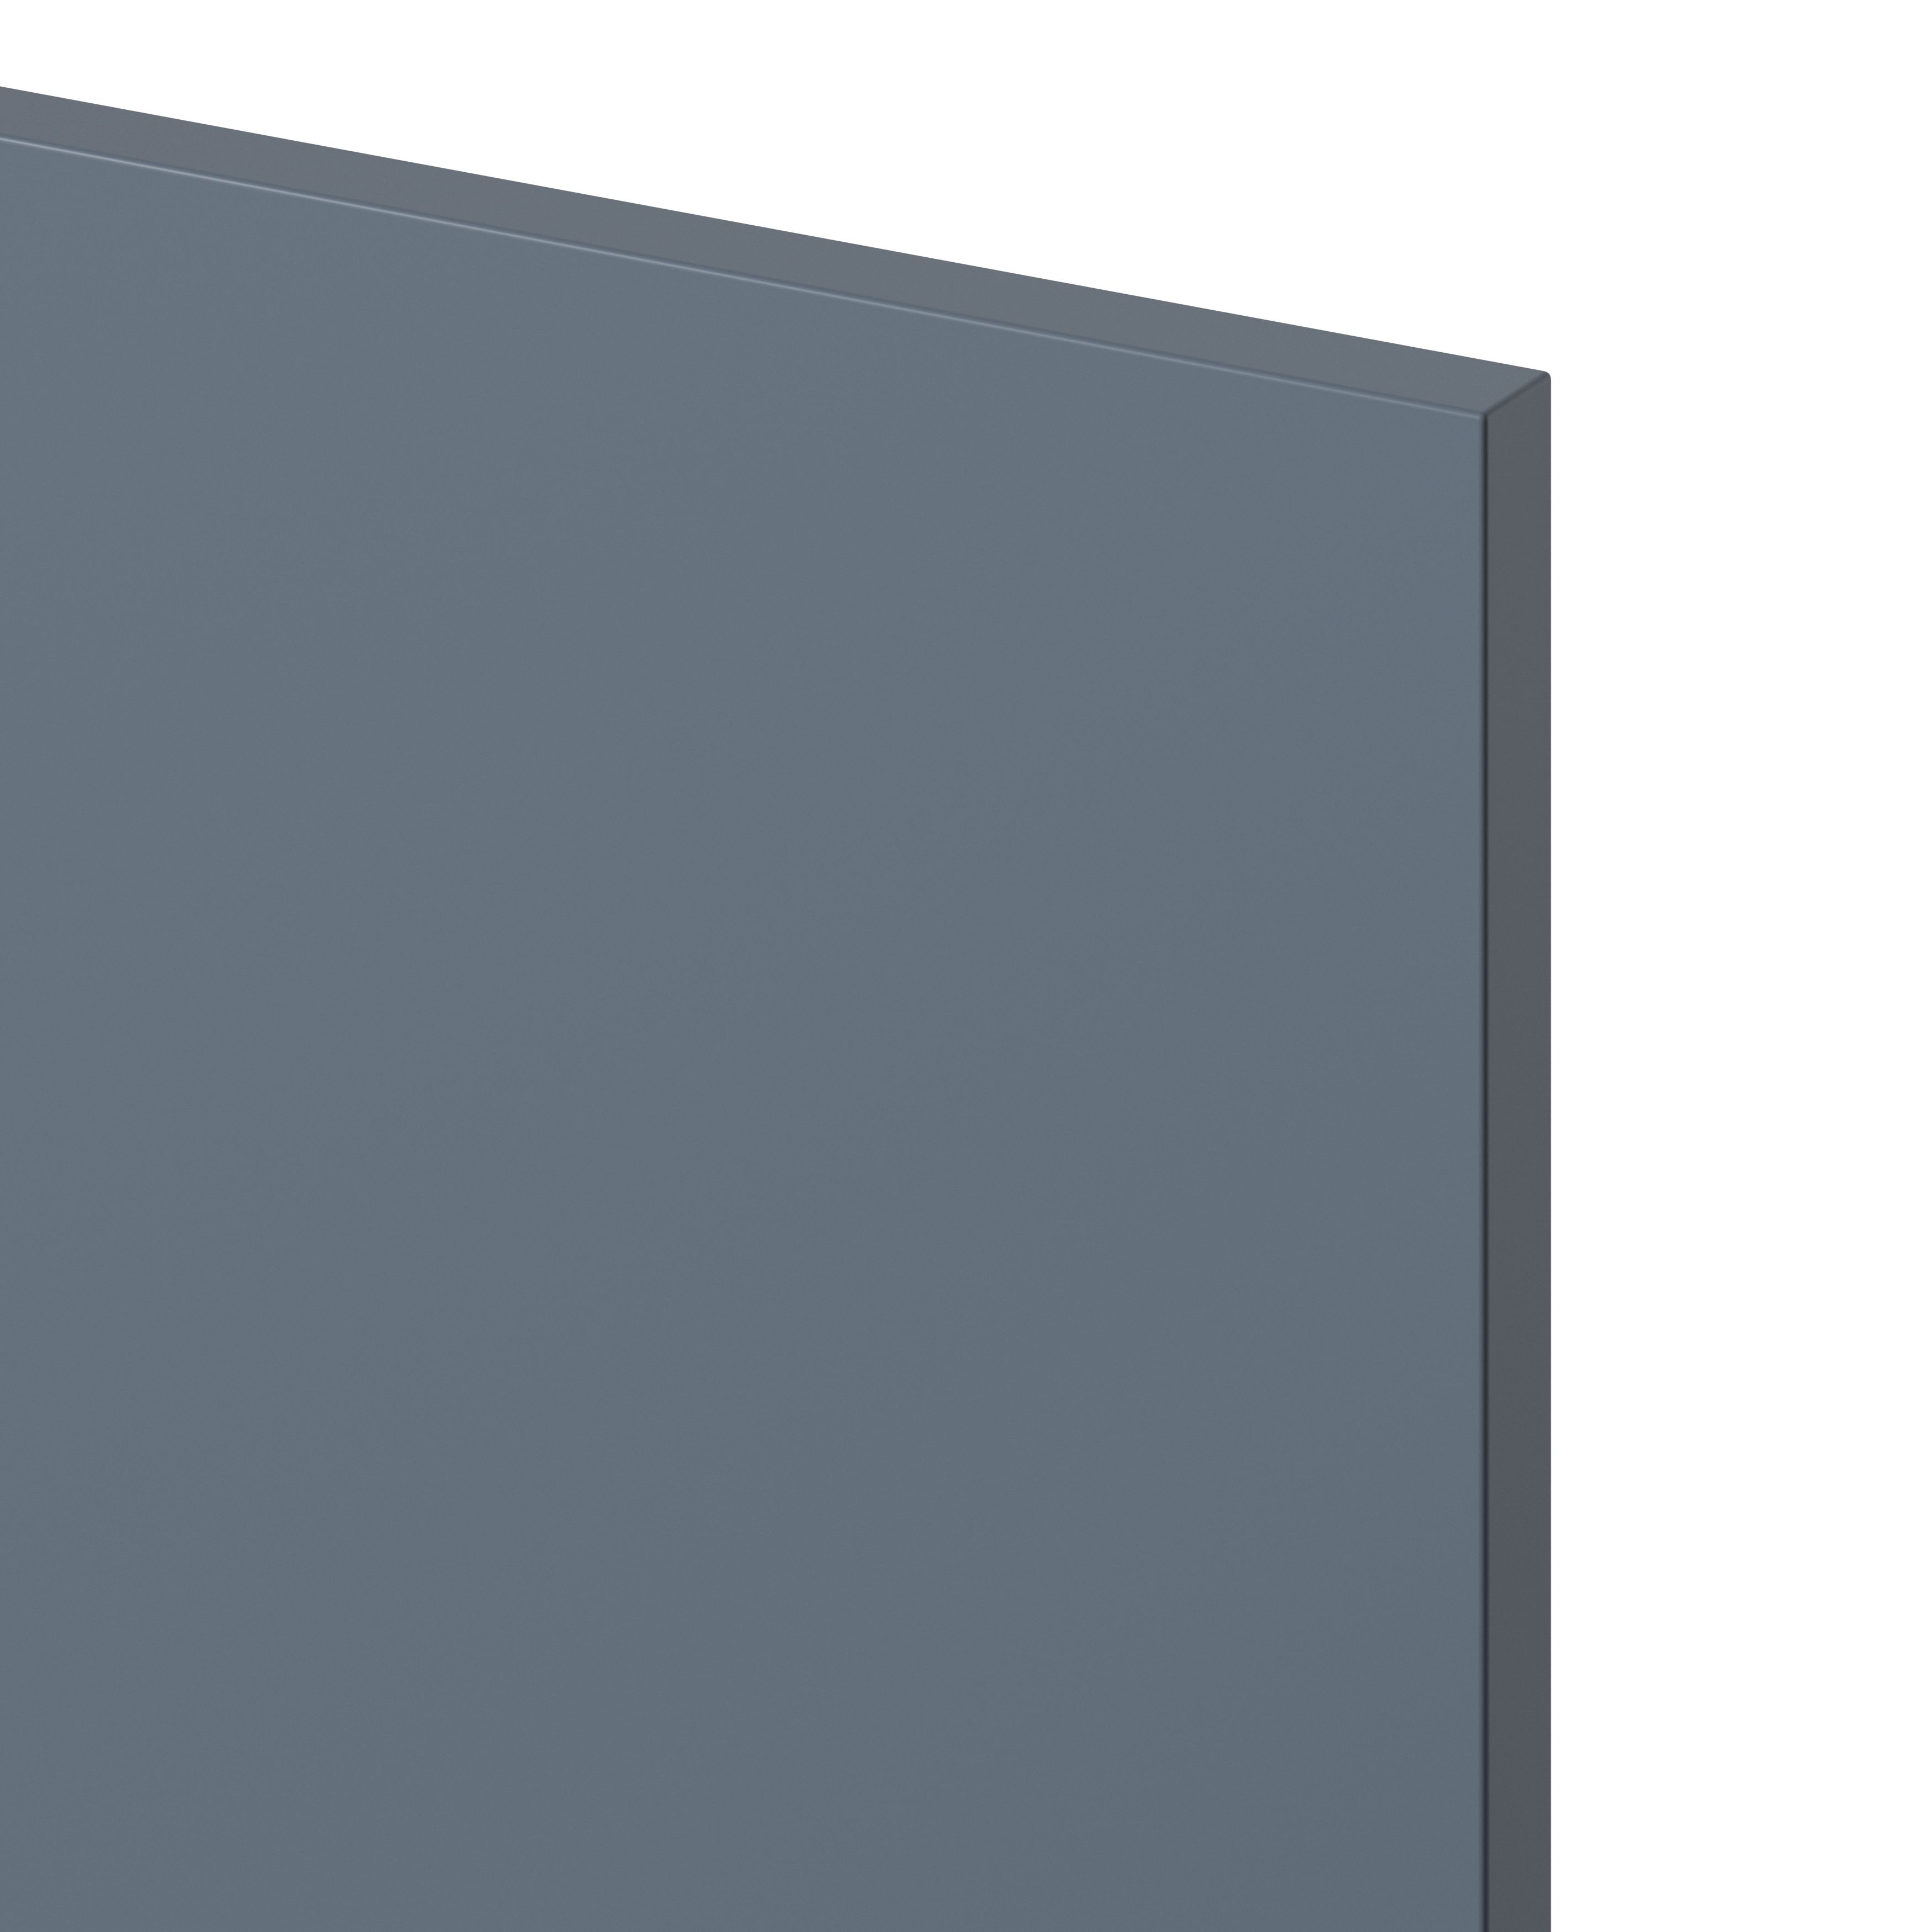 GoodHome Alisma Matt blue Drawer front, bridging door & bi fold door, (W)600mm (H)356mm (T)18mm